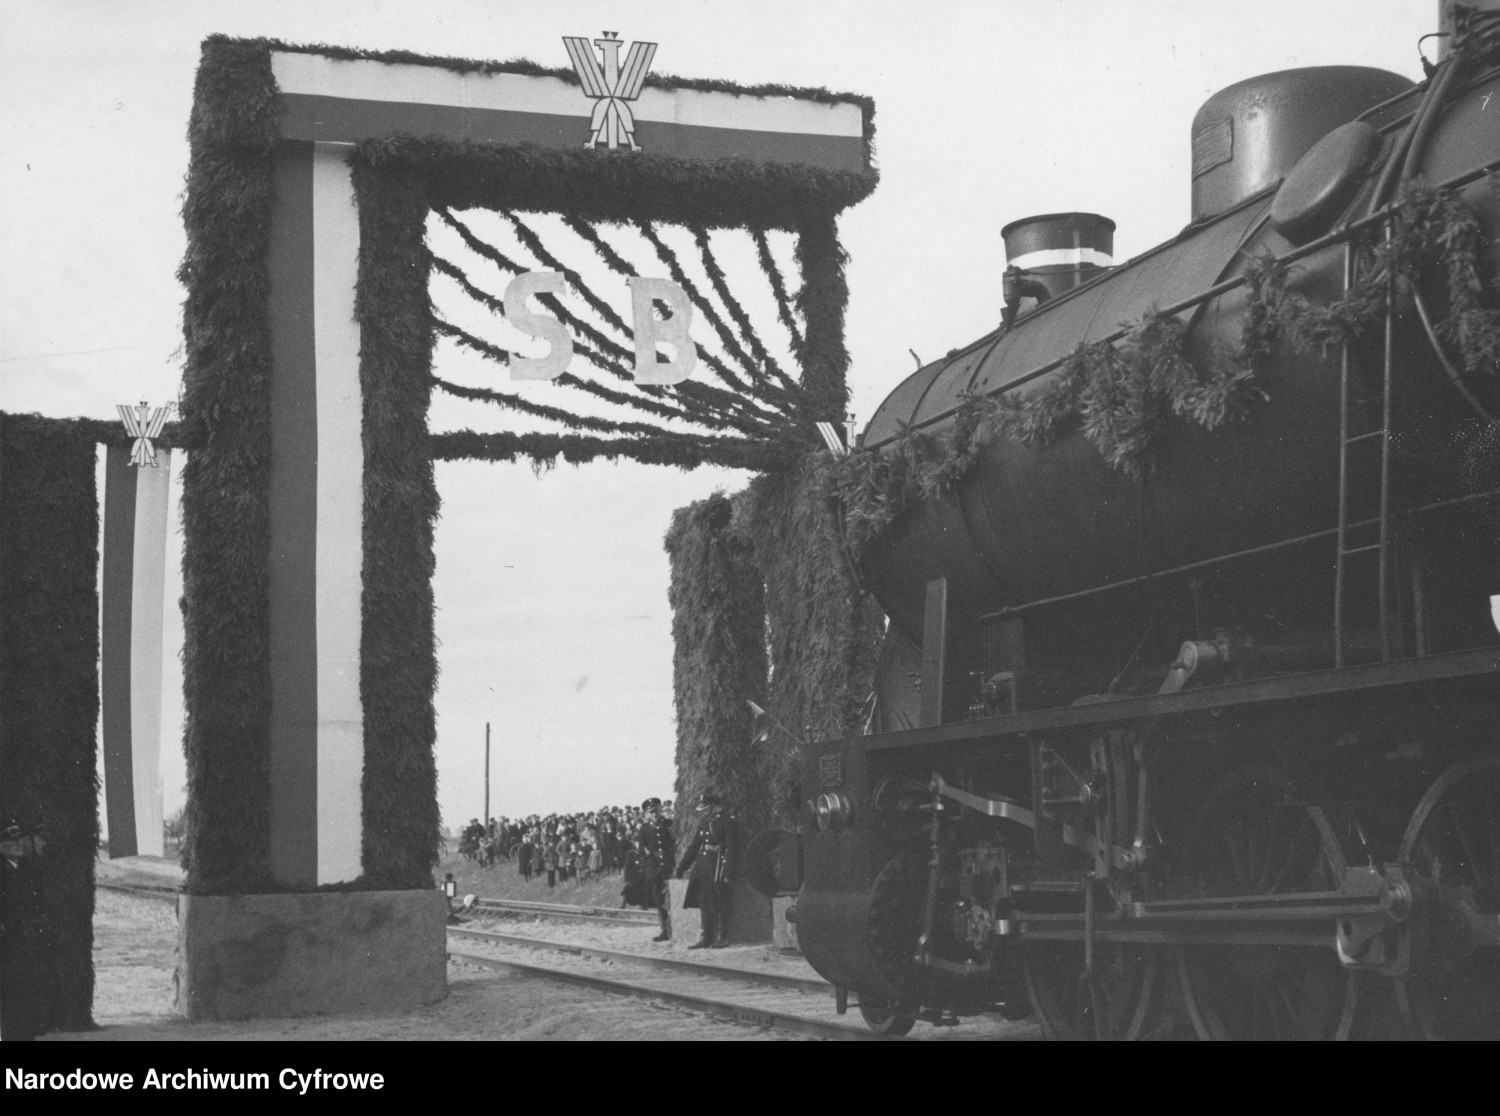 Uroczysty wjazd pierwszego pociągu przez bramę triumfalną. Widoczny udekorowany parowóz Ty 23. Ze zbiorów Narodowego Archiwum Cyfrowego